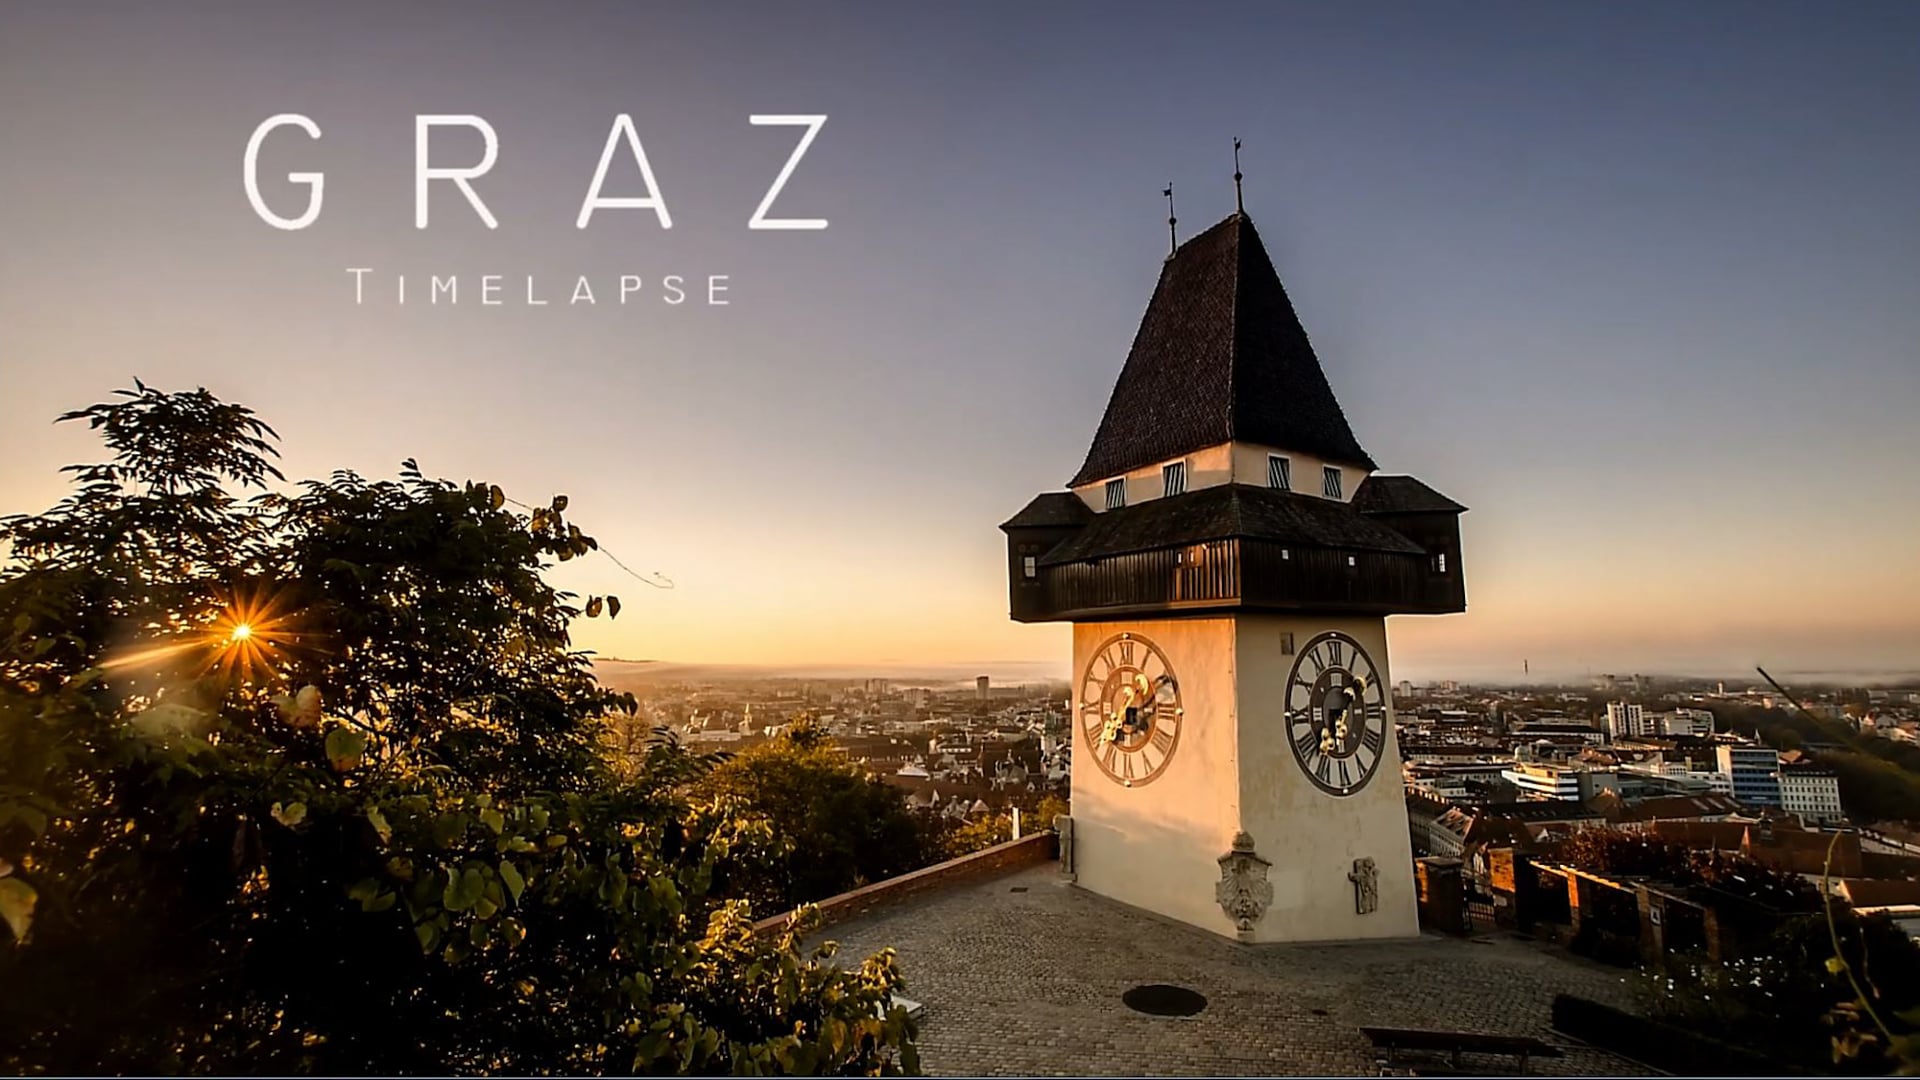 Timelapse of Graz